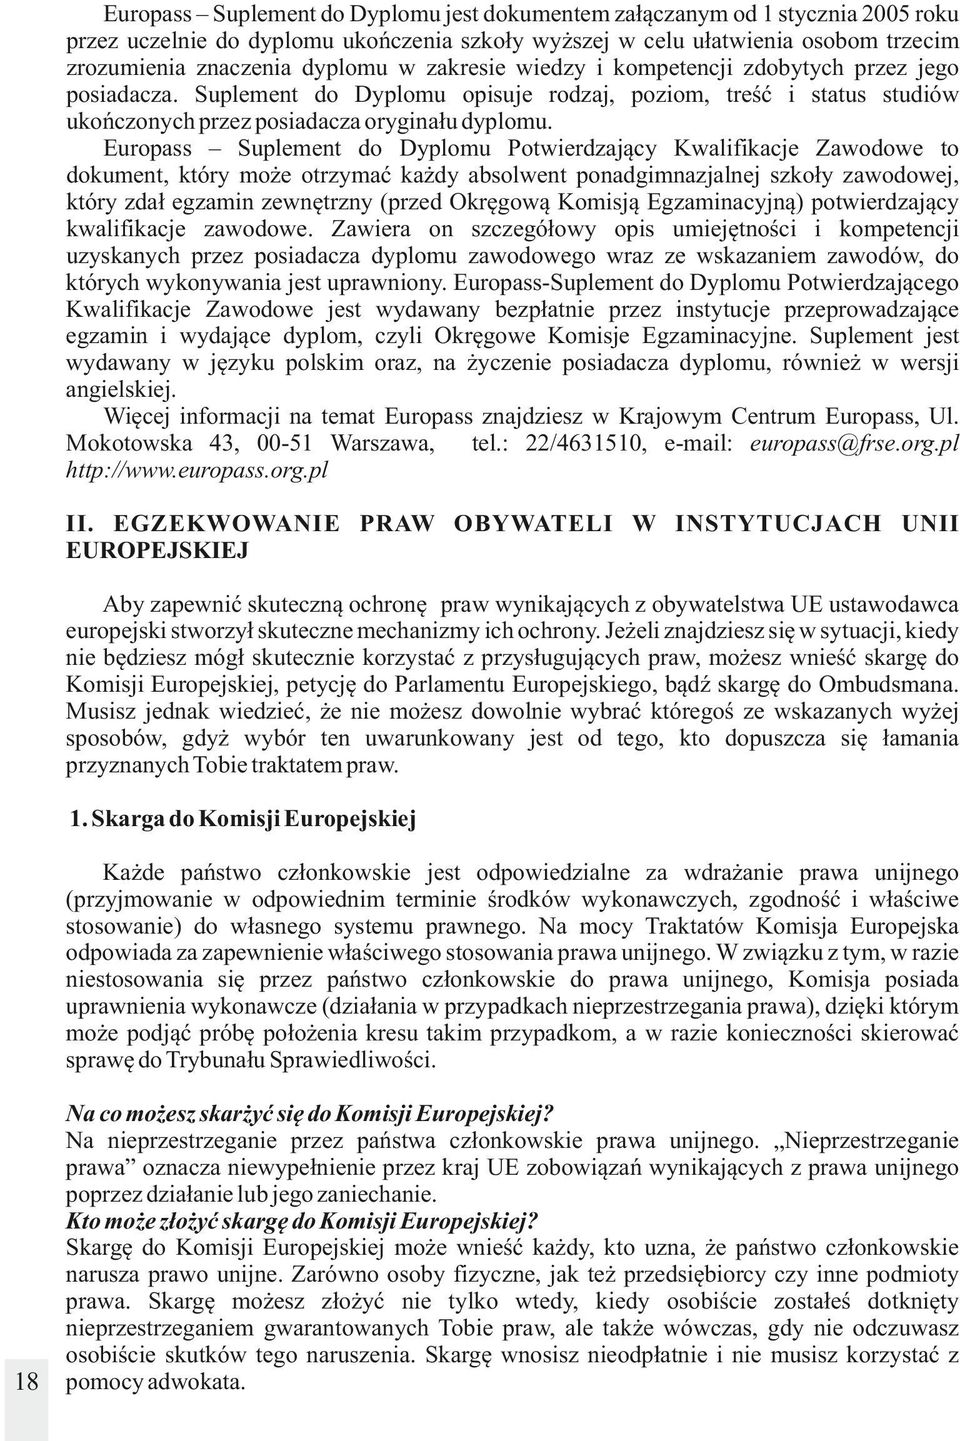 Europass Suplement do Dyplomu Potwierdzający Kwalifikacje Zawodowe to dokument, który może otrzymać każdy absolwent ponadgimnazjalnej szkoły zawodowej, który zdał egzamin zewnętrzny (przed Okręgową